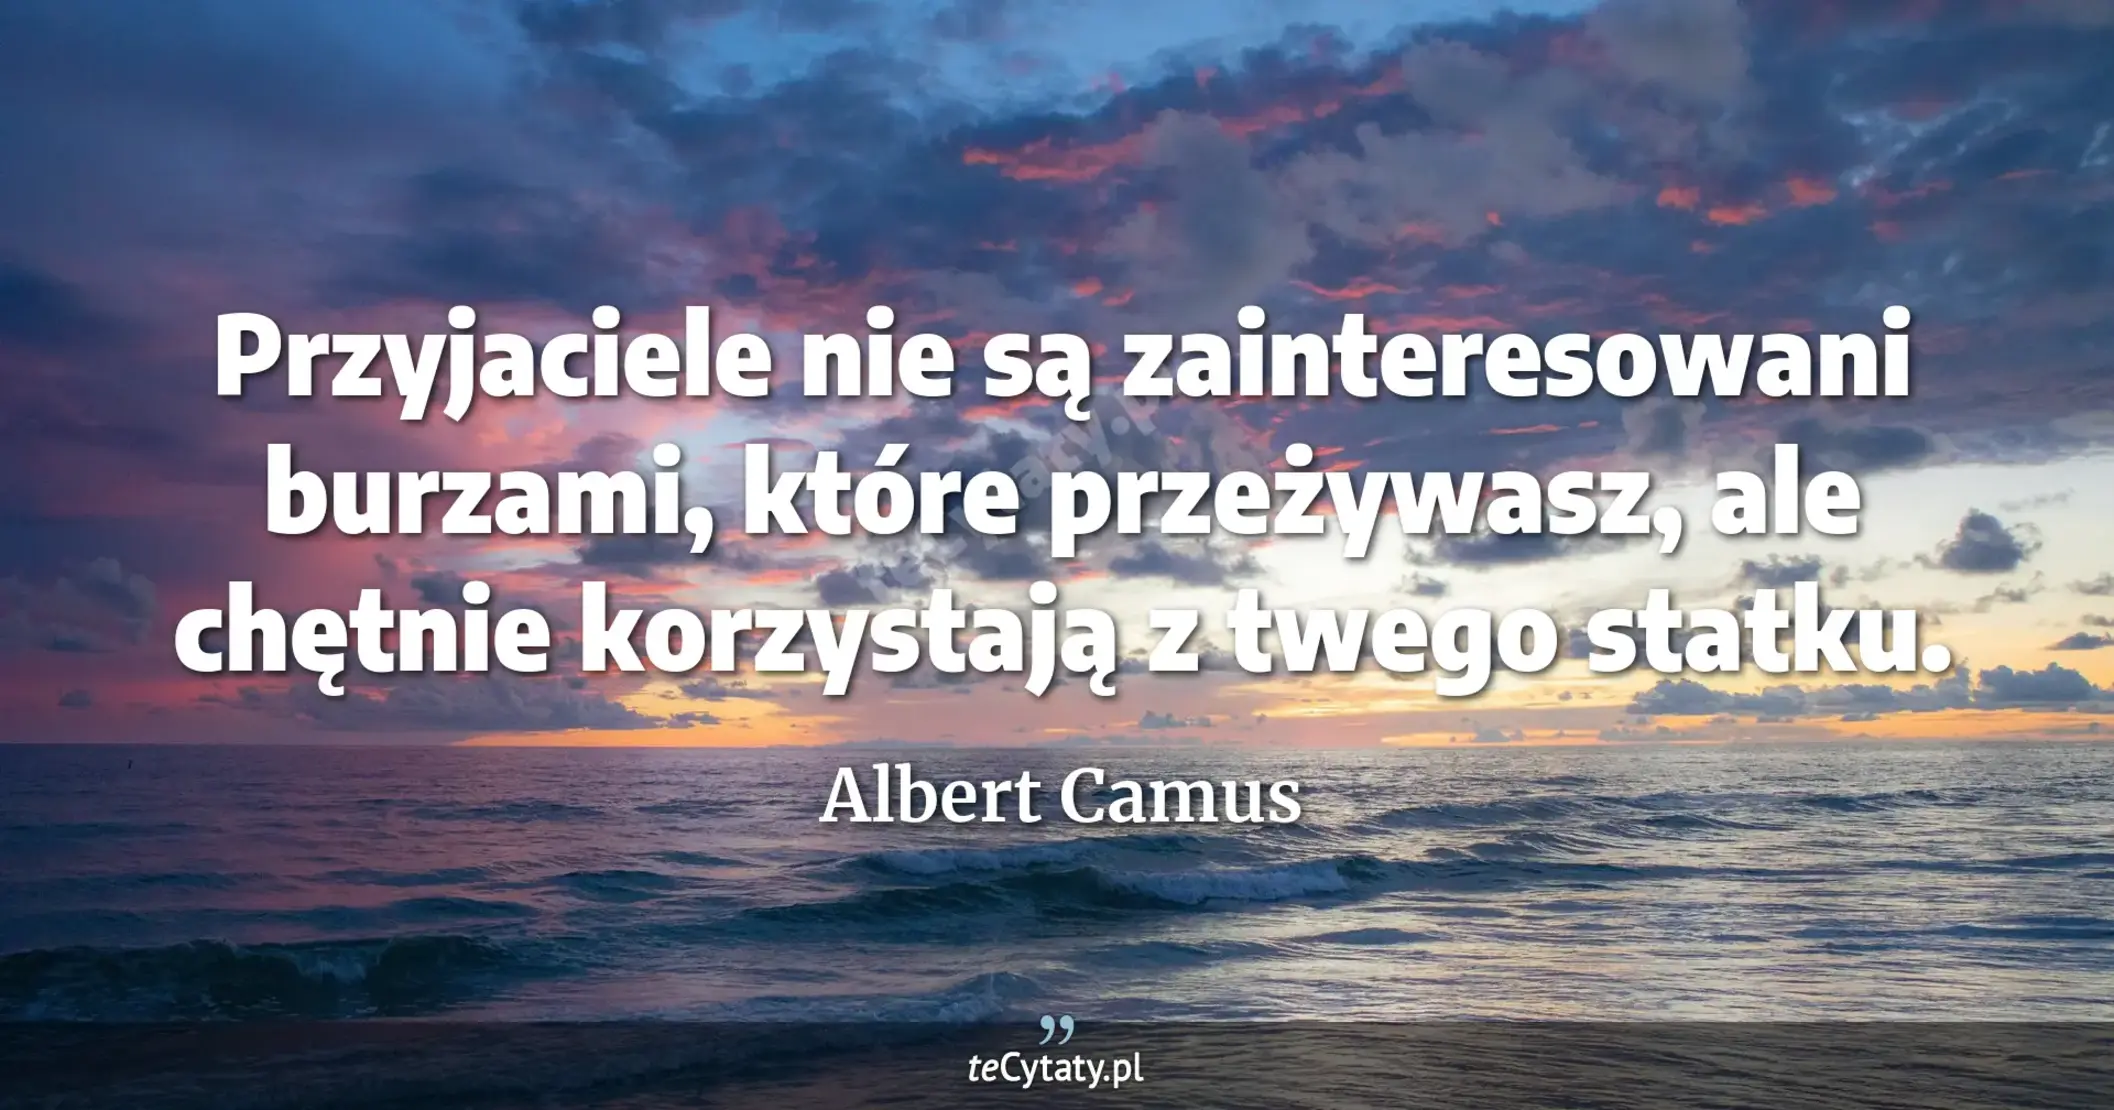 Przyjaciele nie są zainteresowani burzami, które przeżywasz, ale chętnie korzystają z twego statku. - Albert Camus